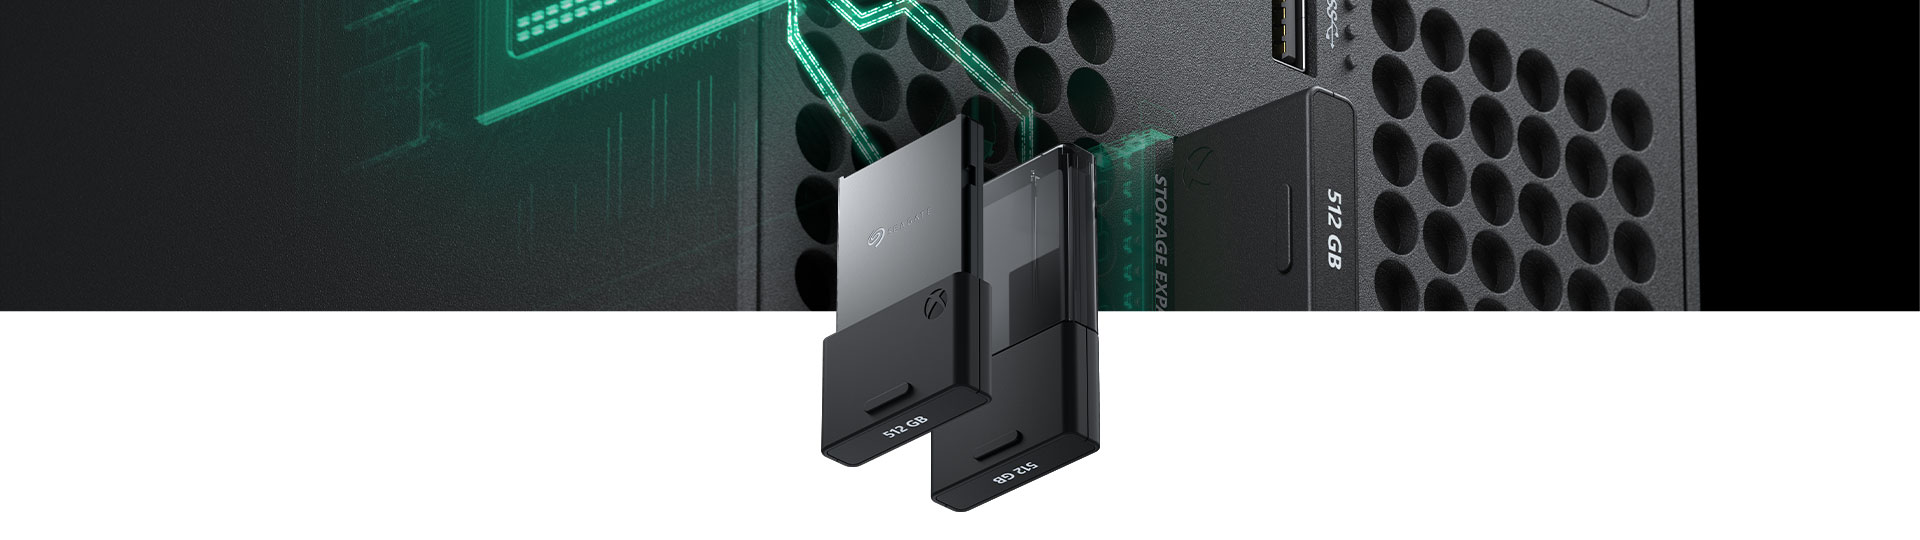 Κάρτα επέκτασης χώρου αποθήκευσης Seagate 512 gigabyte για το Xbox Series X με κοντινή όψη που εισέρχεται σε ένα Xbox Series X